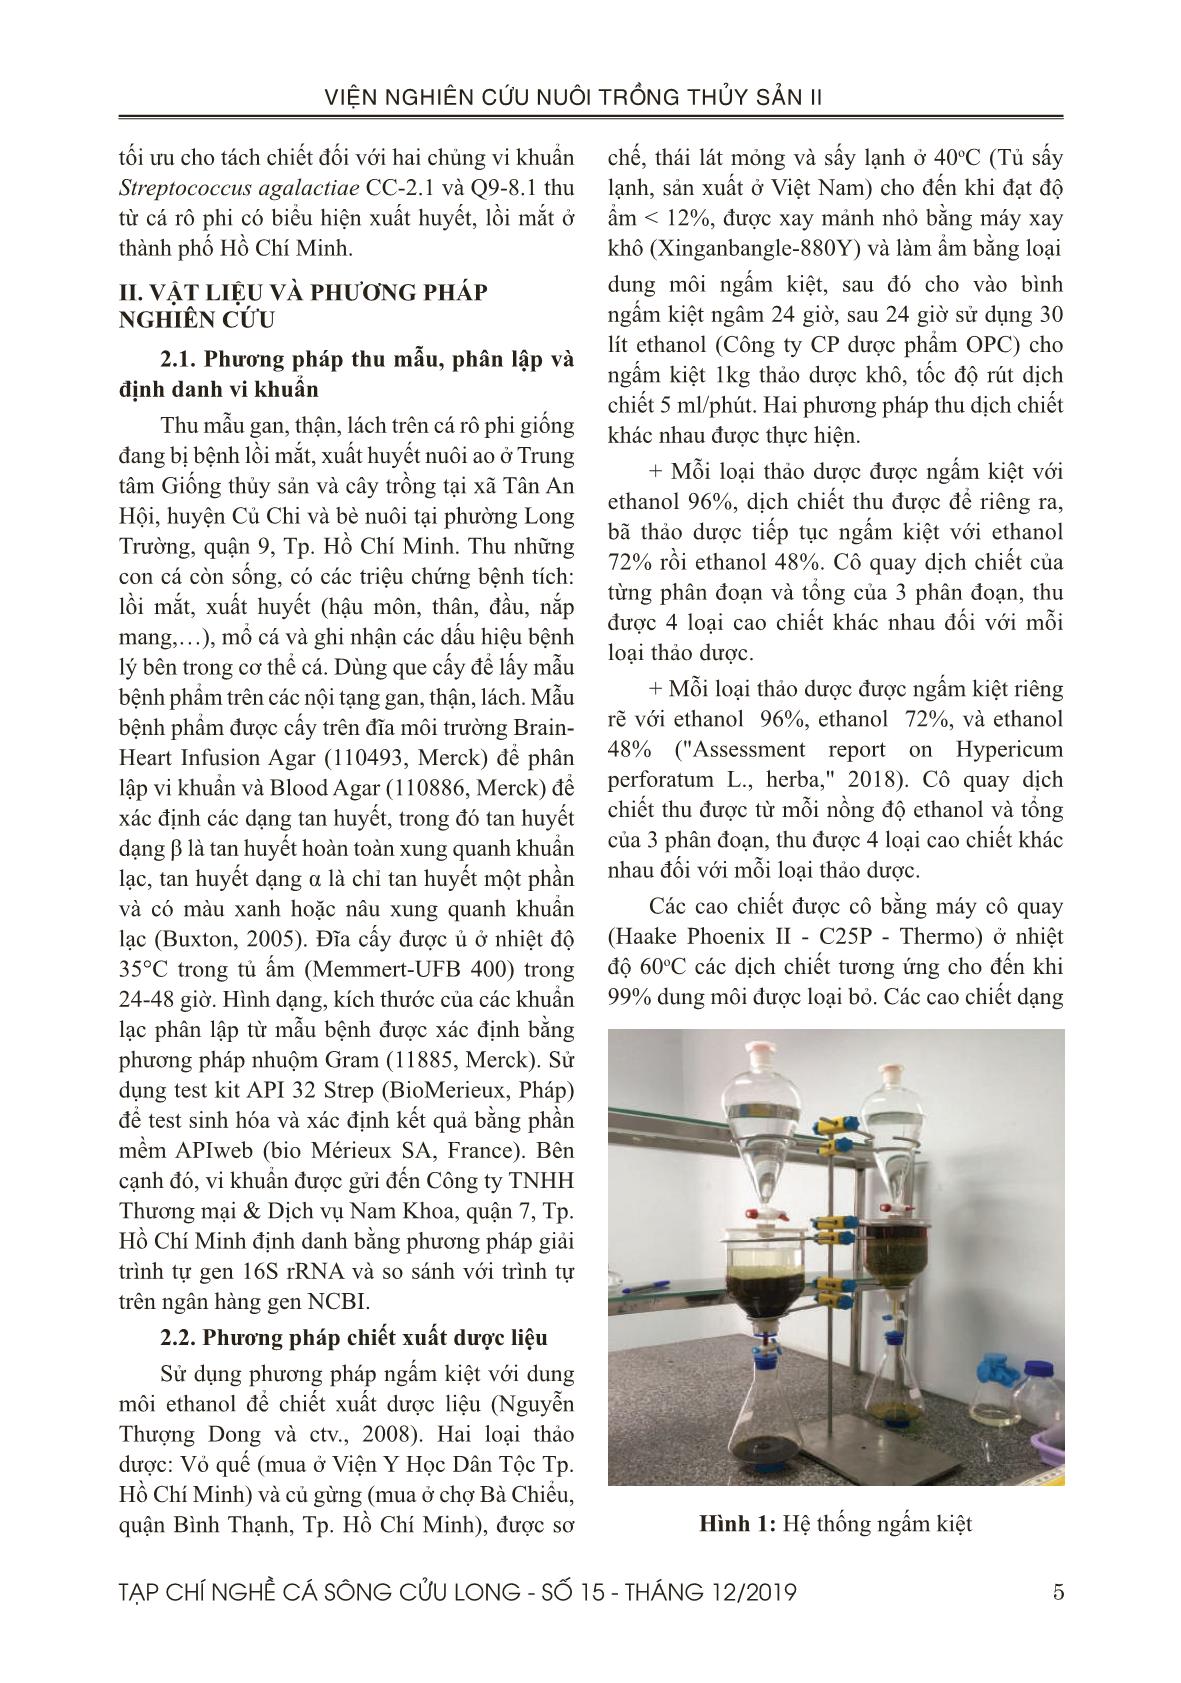 Tạp chí Nghề cá sông Cửu Long - Số 15 - Tháng 12/2019 trang 5